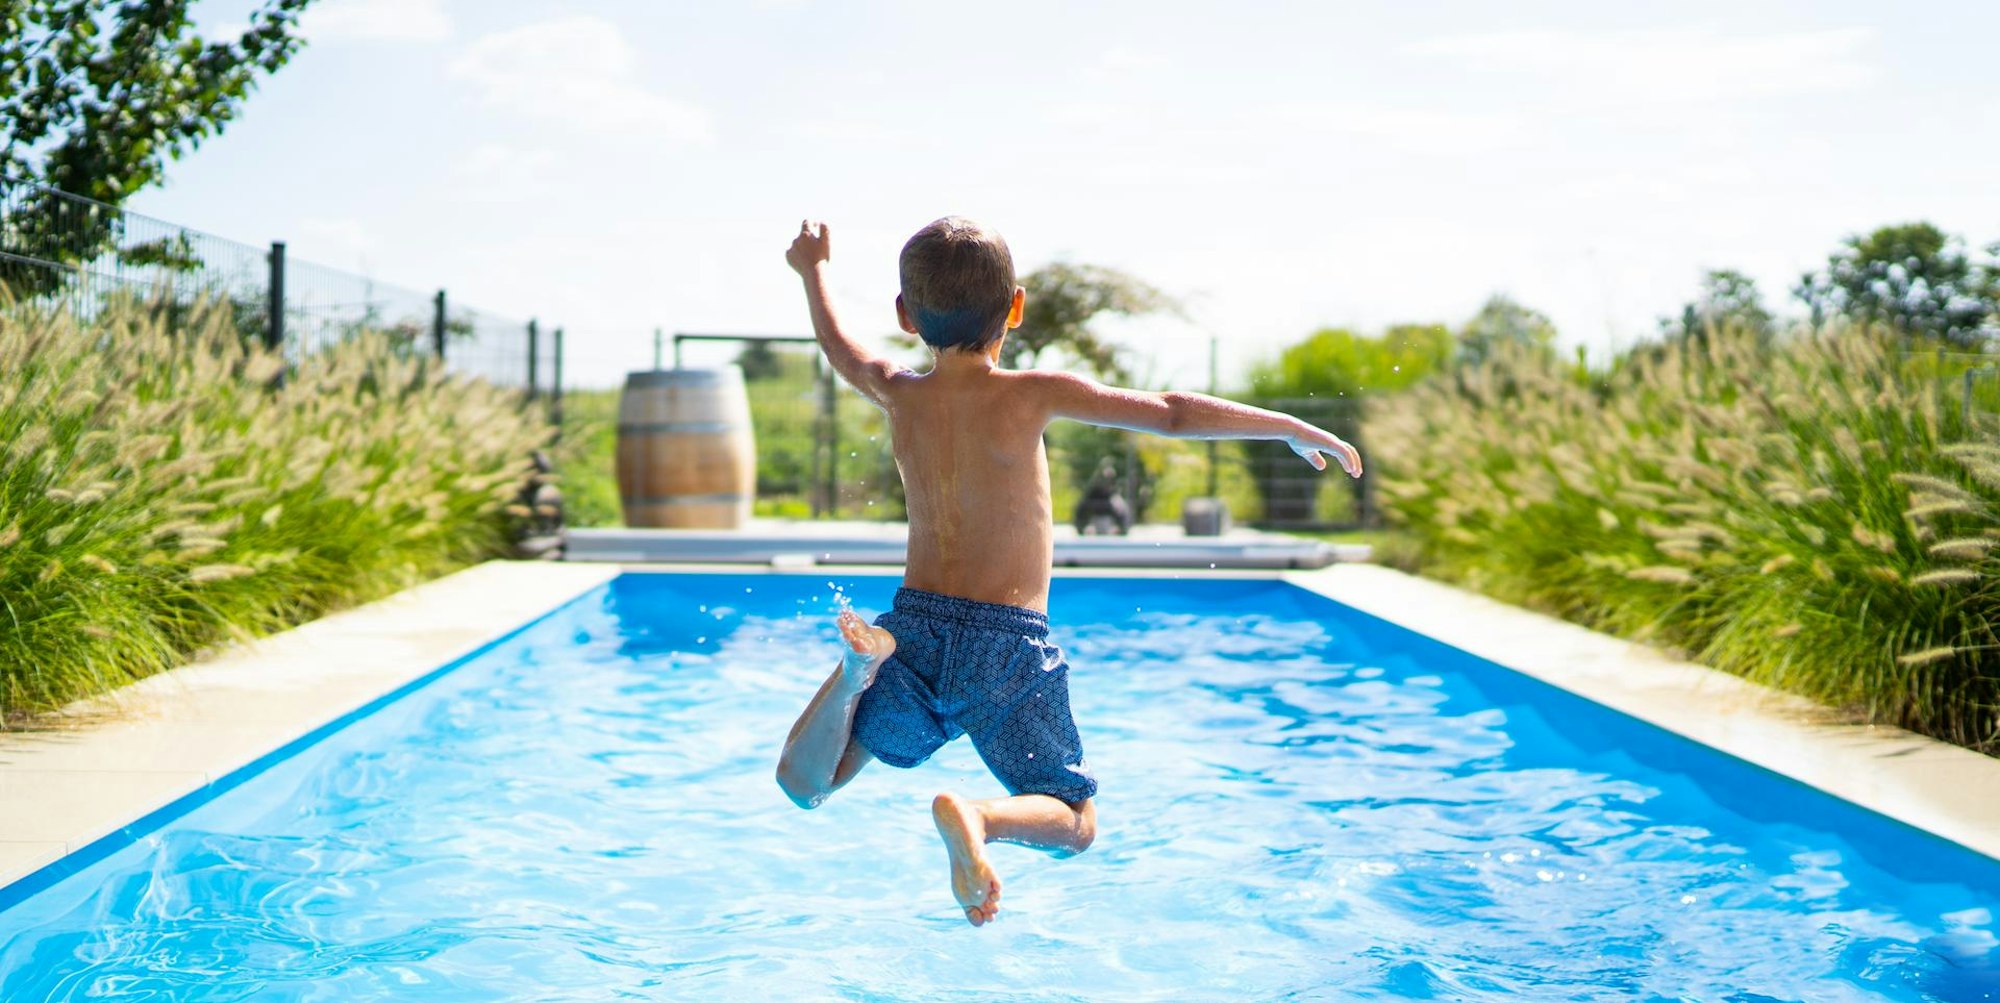 Junge-springt-mit-Anlauf-in-einen-Swimmingpool